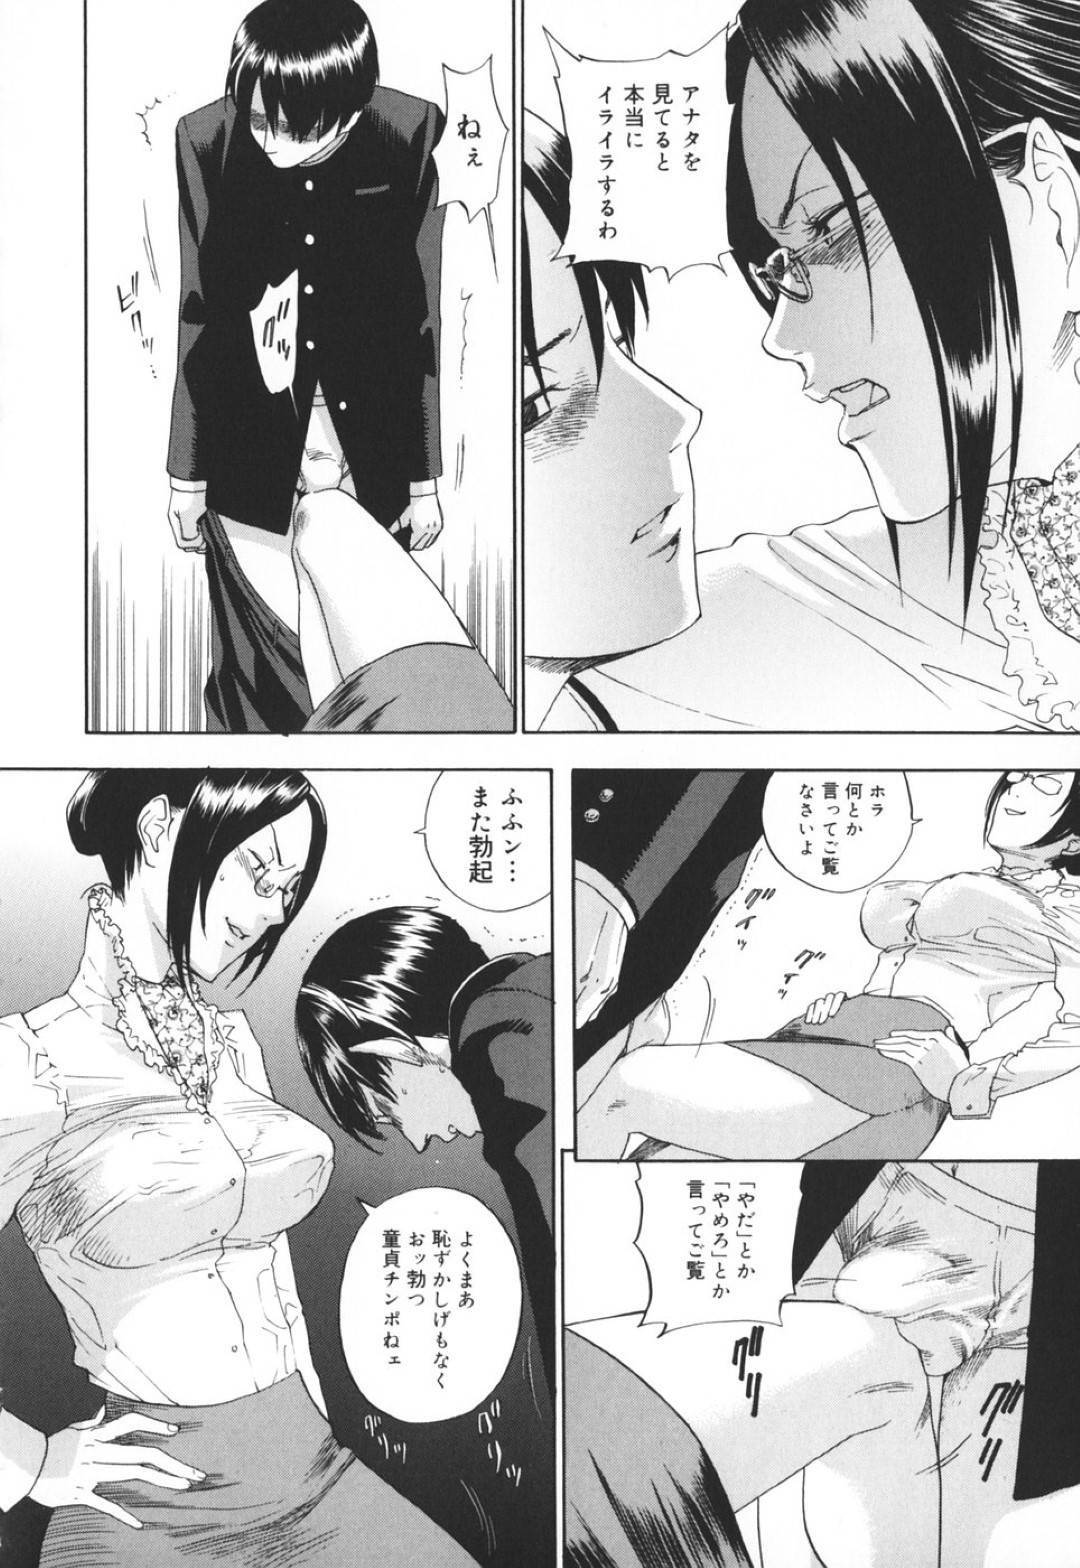 【エロ漫画】黒髪淫乱女教師は、童貞生徒をフェラしておちょくっていたが、押し倒されてしまう…【米倉けんご】